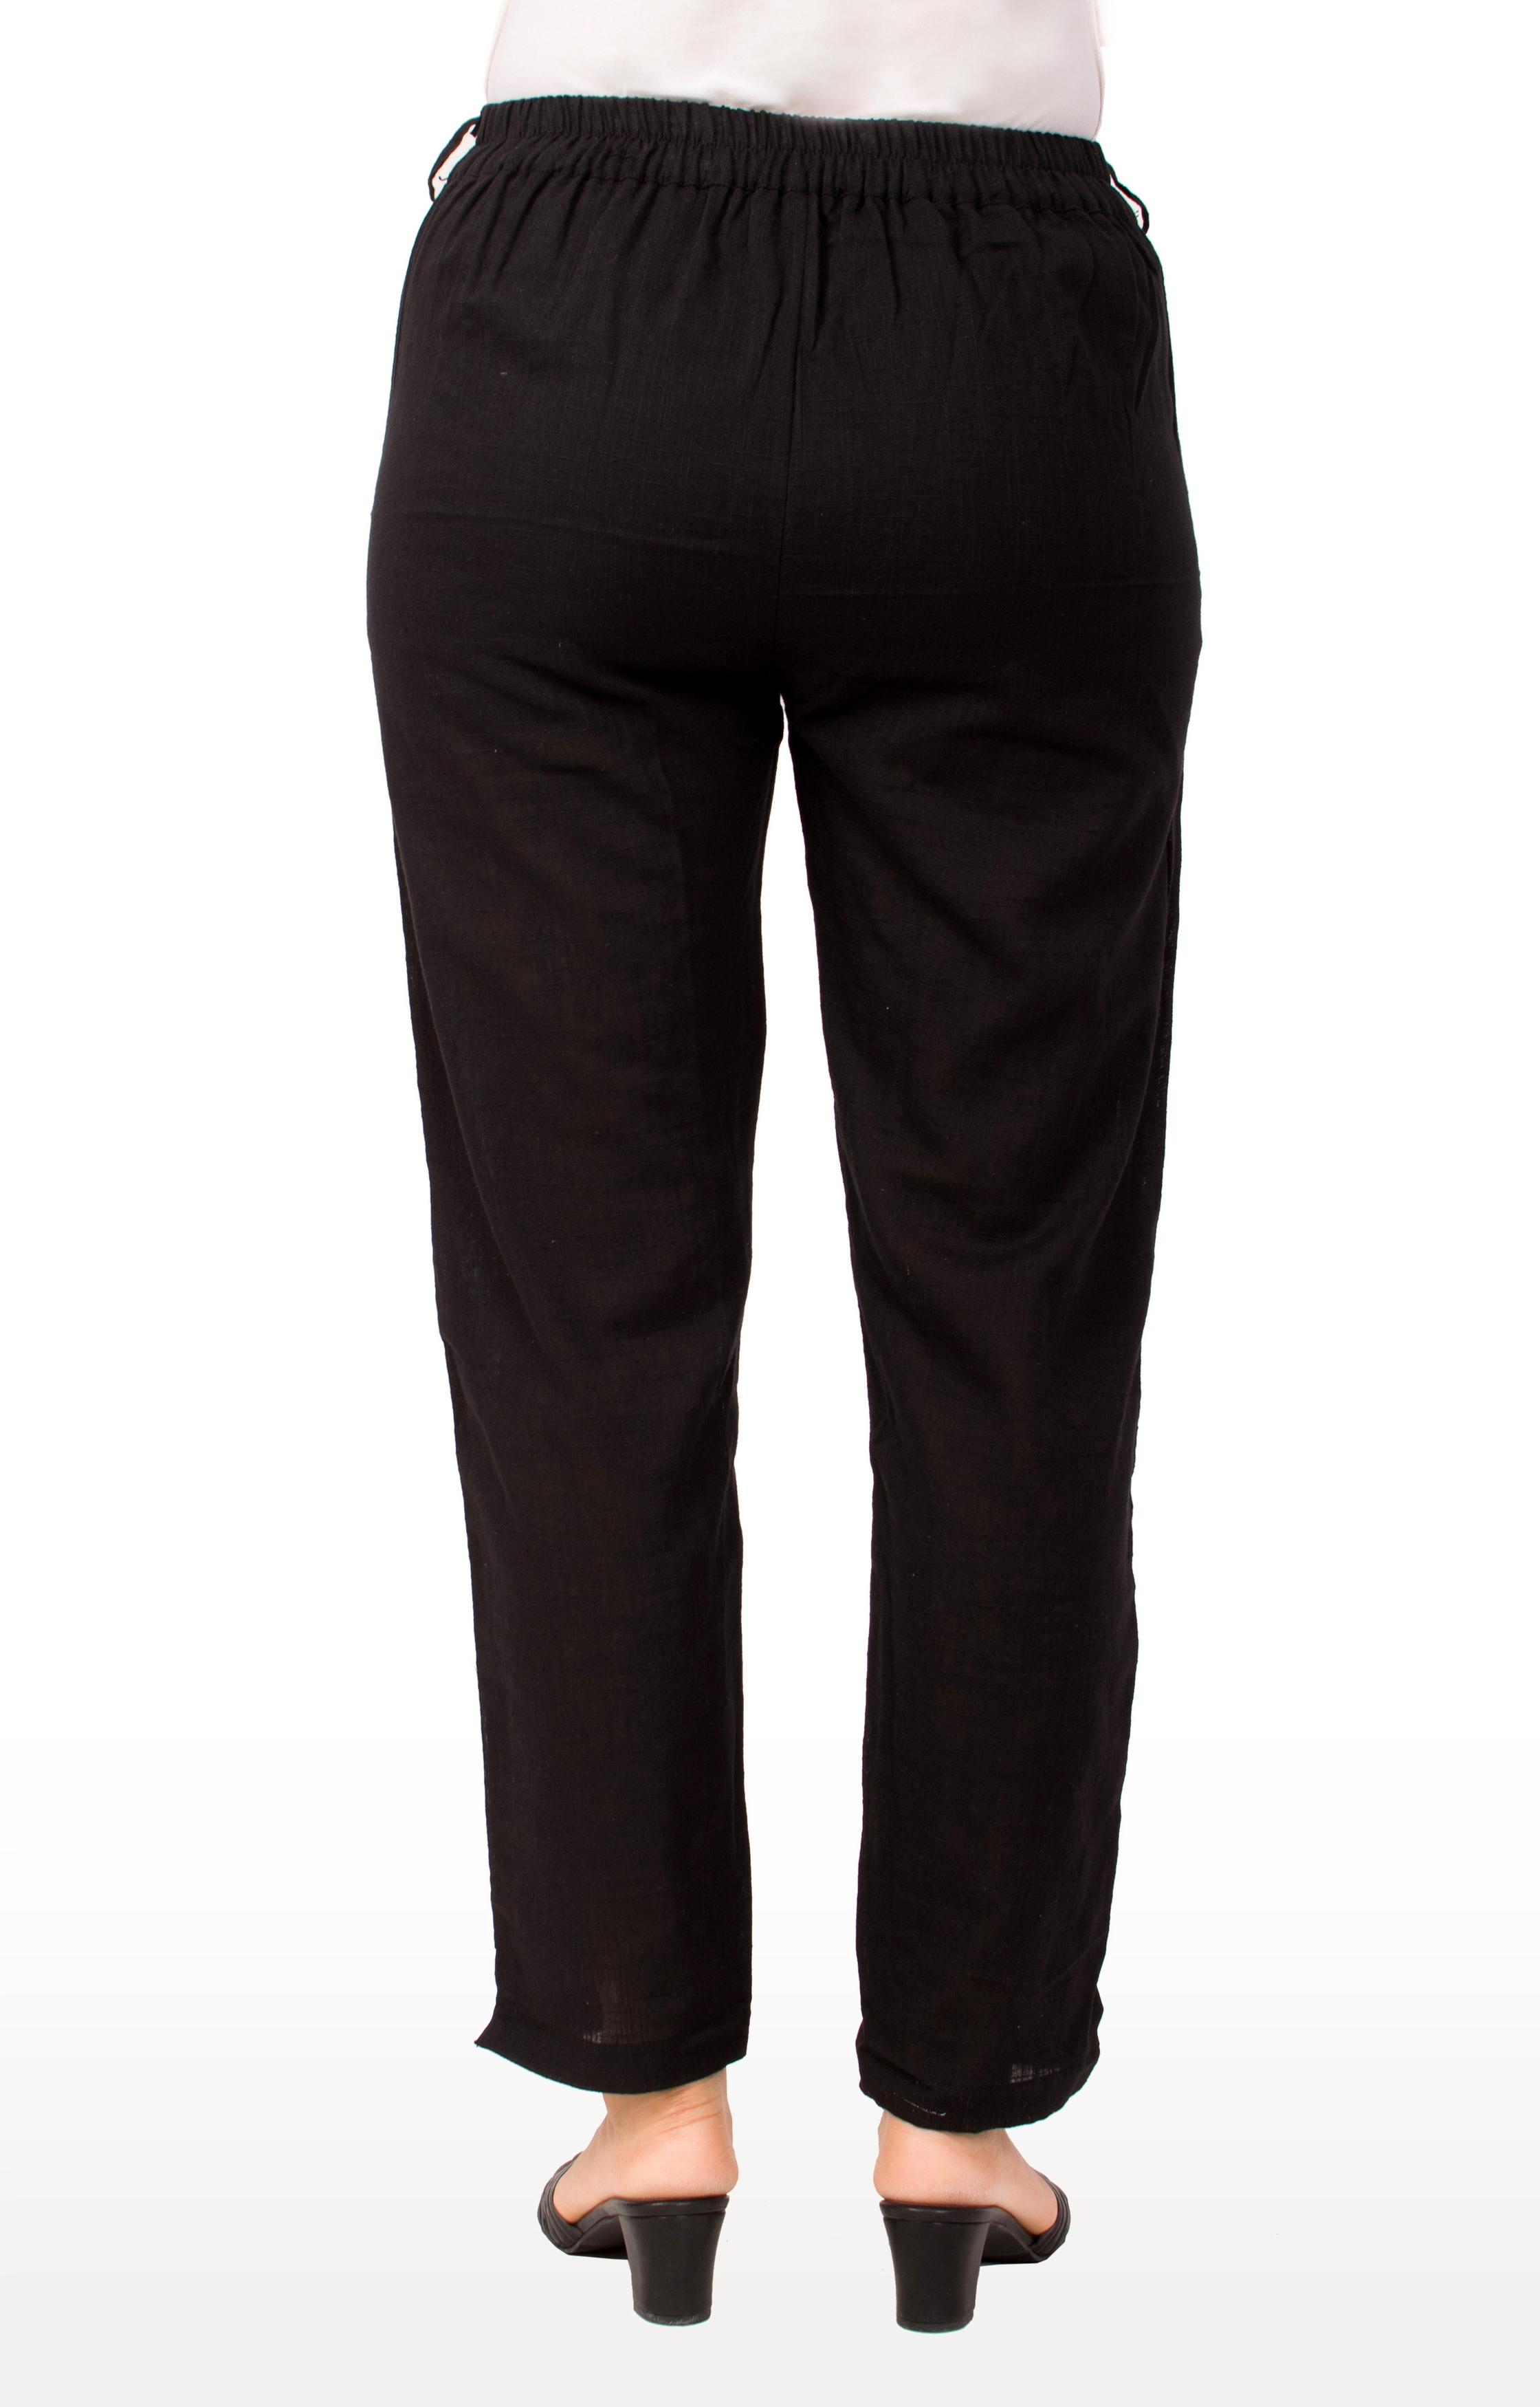 Miravan | Miravan Cotton Solid Straight Regular fit Casual Trouser Pant for Women's & Girls 3